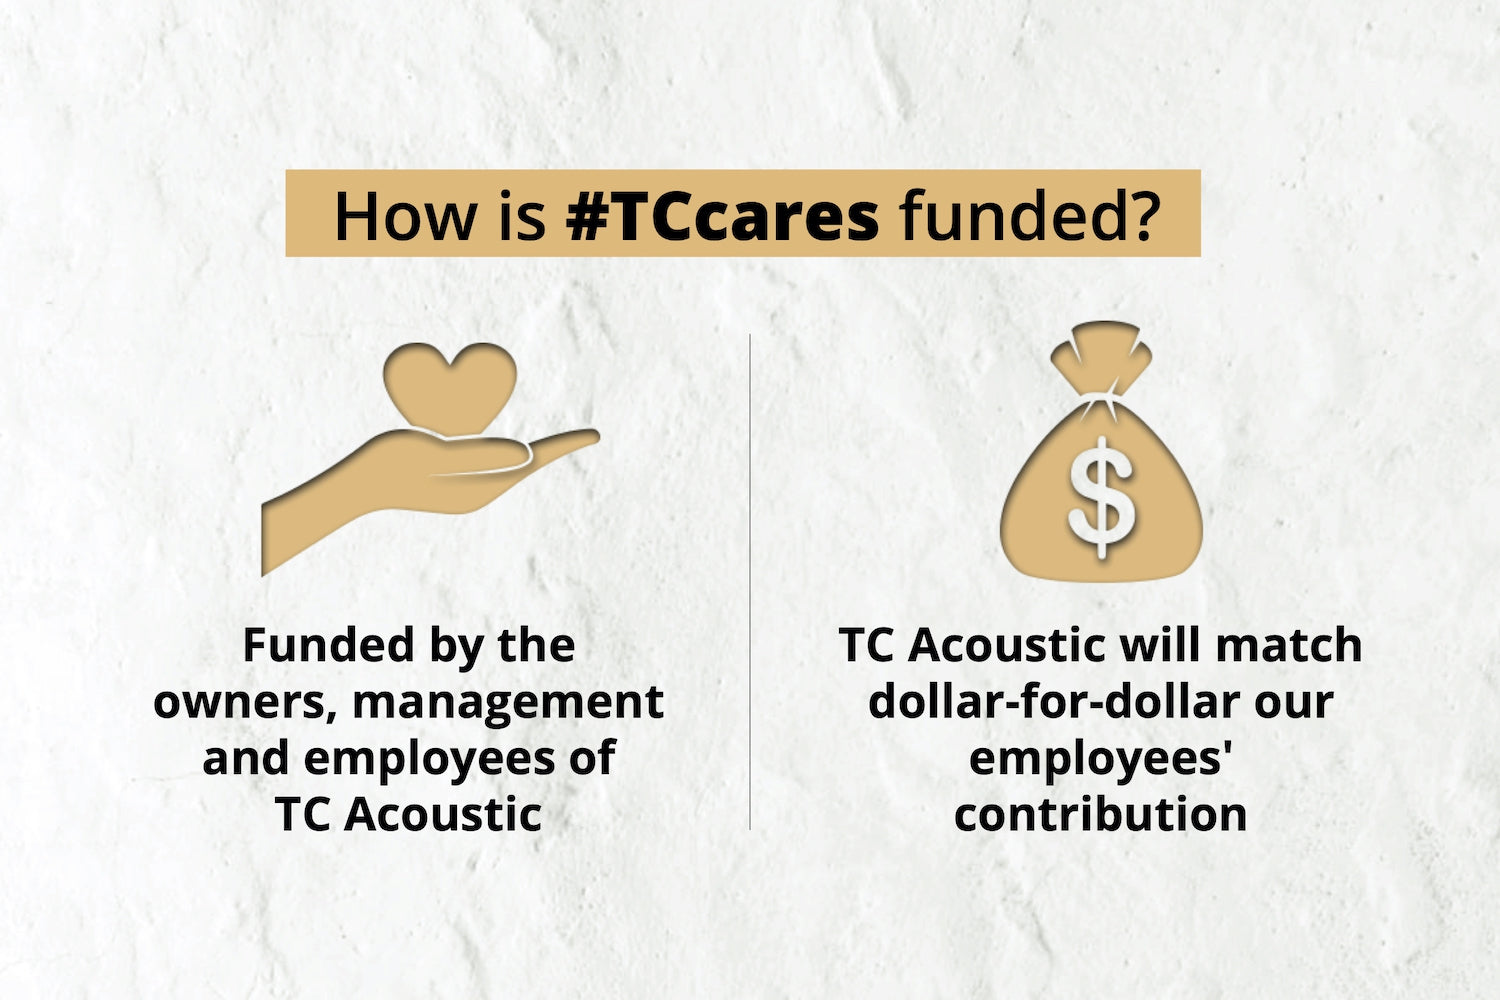 #TCcares